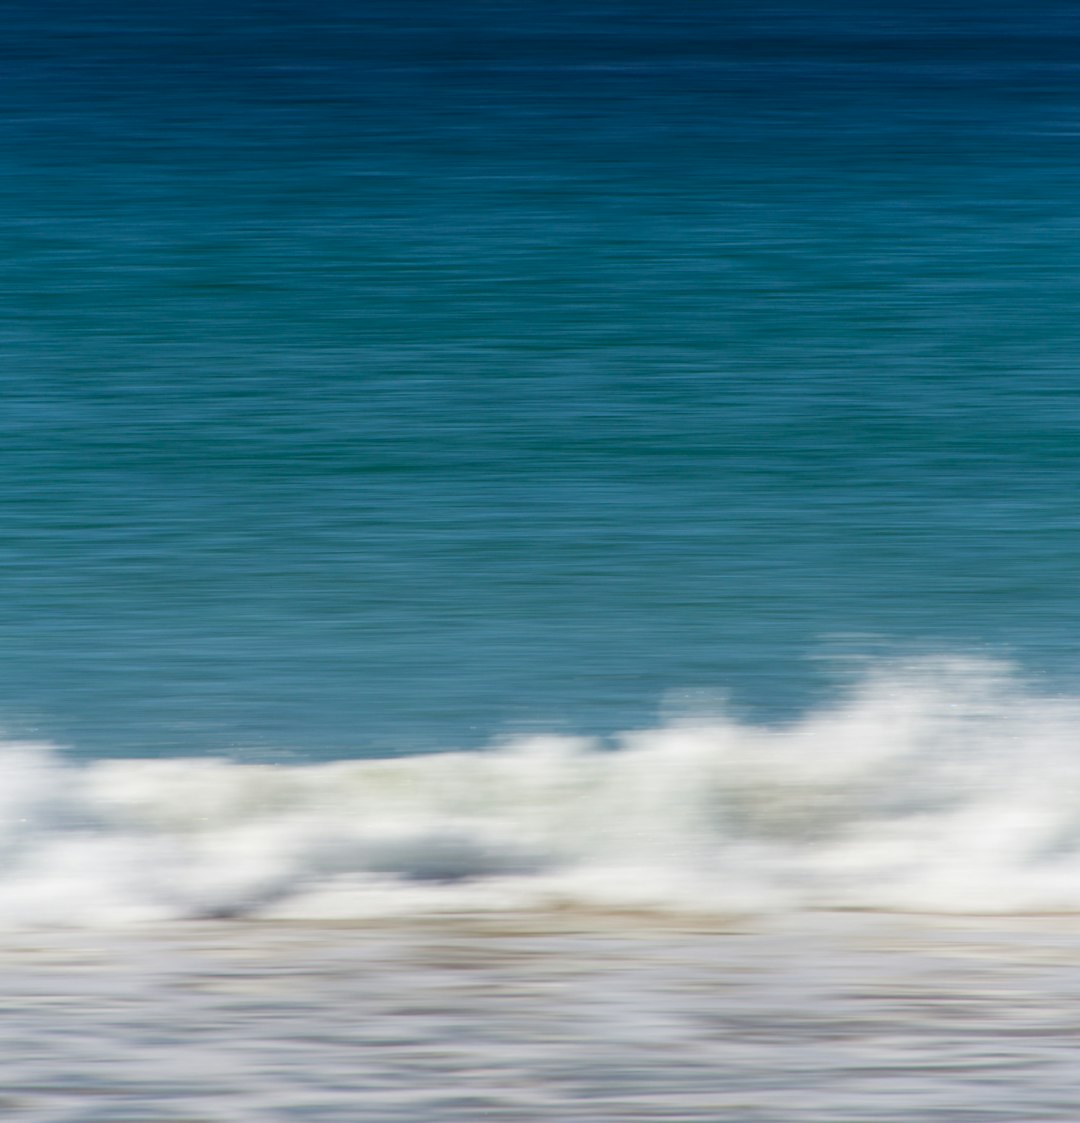 Ocean photo spot Manly Beach Palm Beach NSW